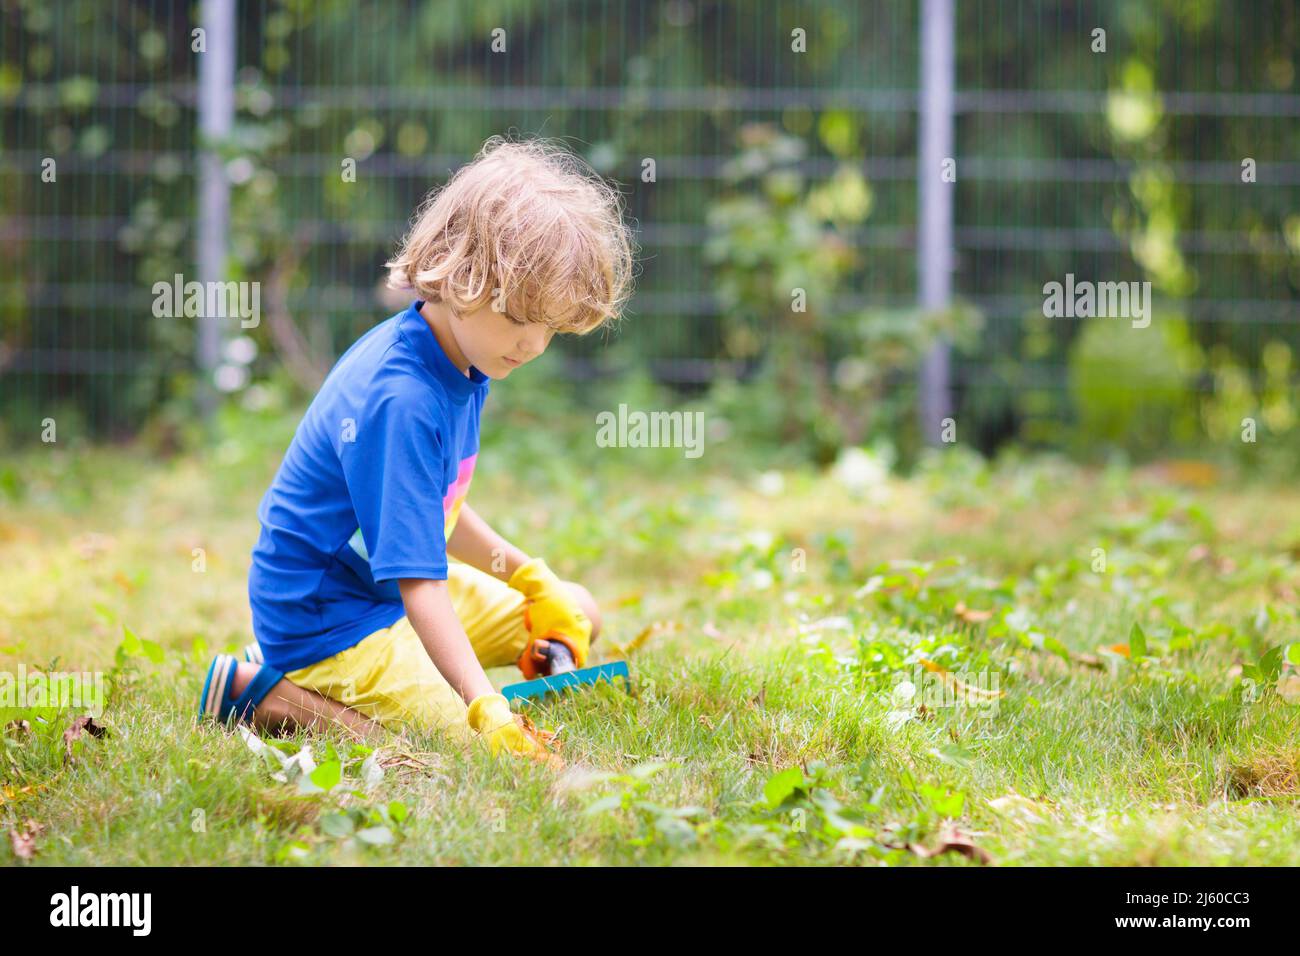 Giardinaggio di famiglia. I bambini aiutano in giardino. Ragazzino che tira le erbacce nel cortile soleggiato. Bambino che prende cura dell'erbaccia del prato. Foto Stock